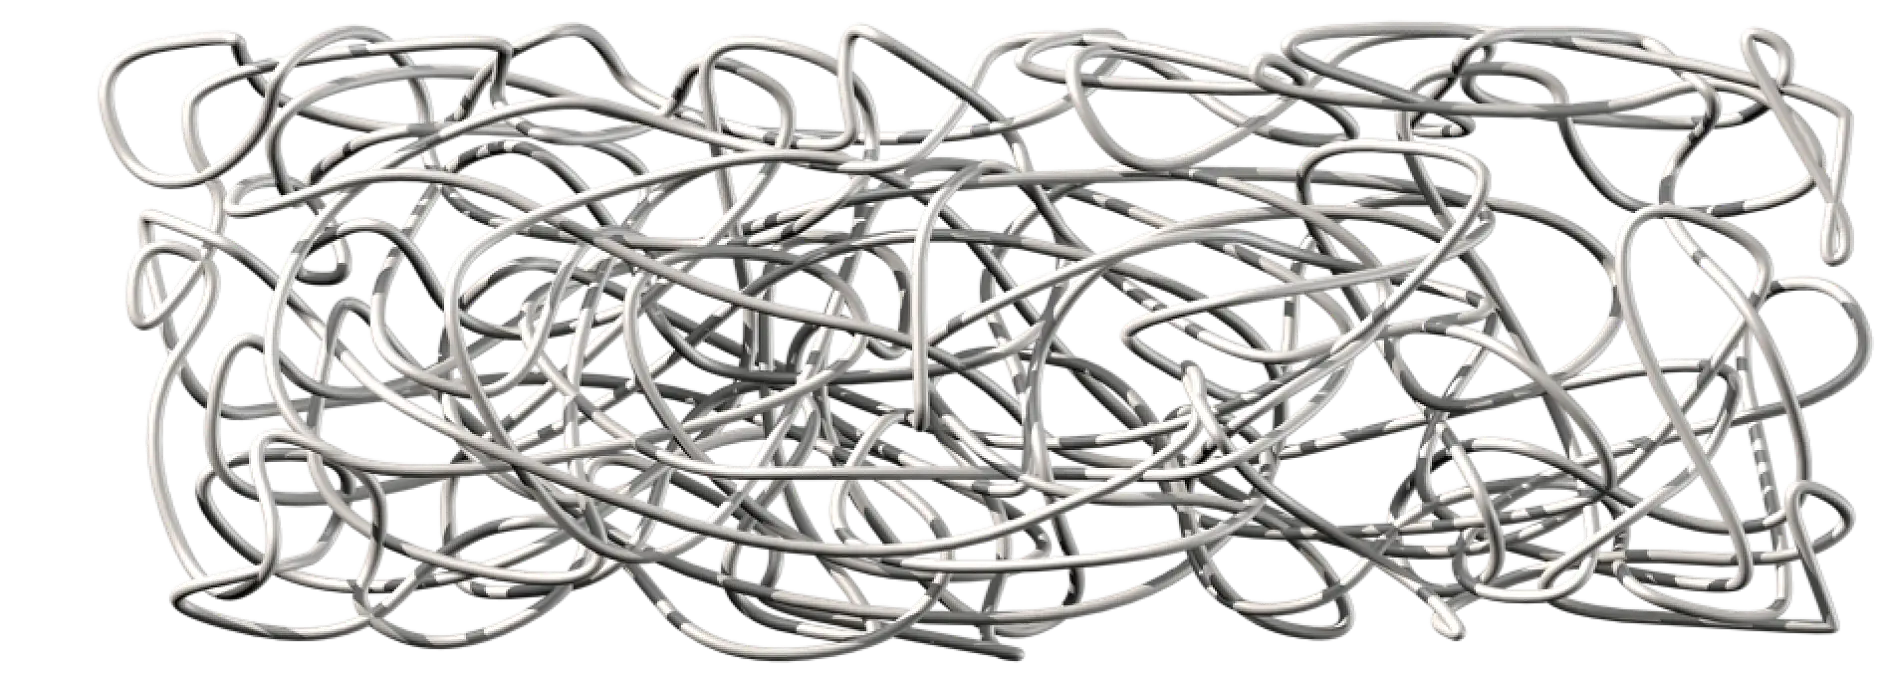 El caucho natural está compuesto por cadenas de polímeros extremadamente largas que se han enredado, no conectado